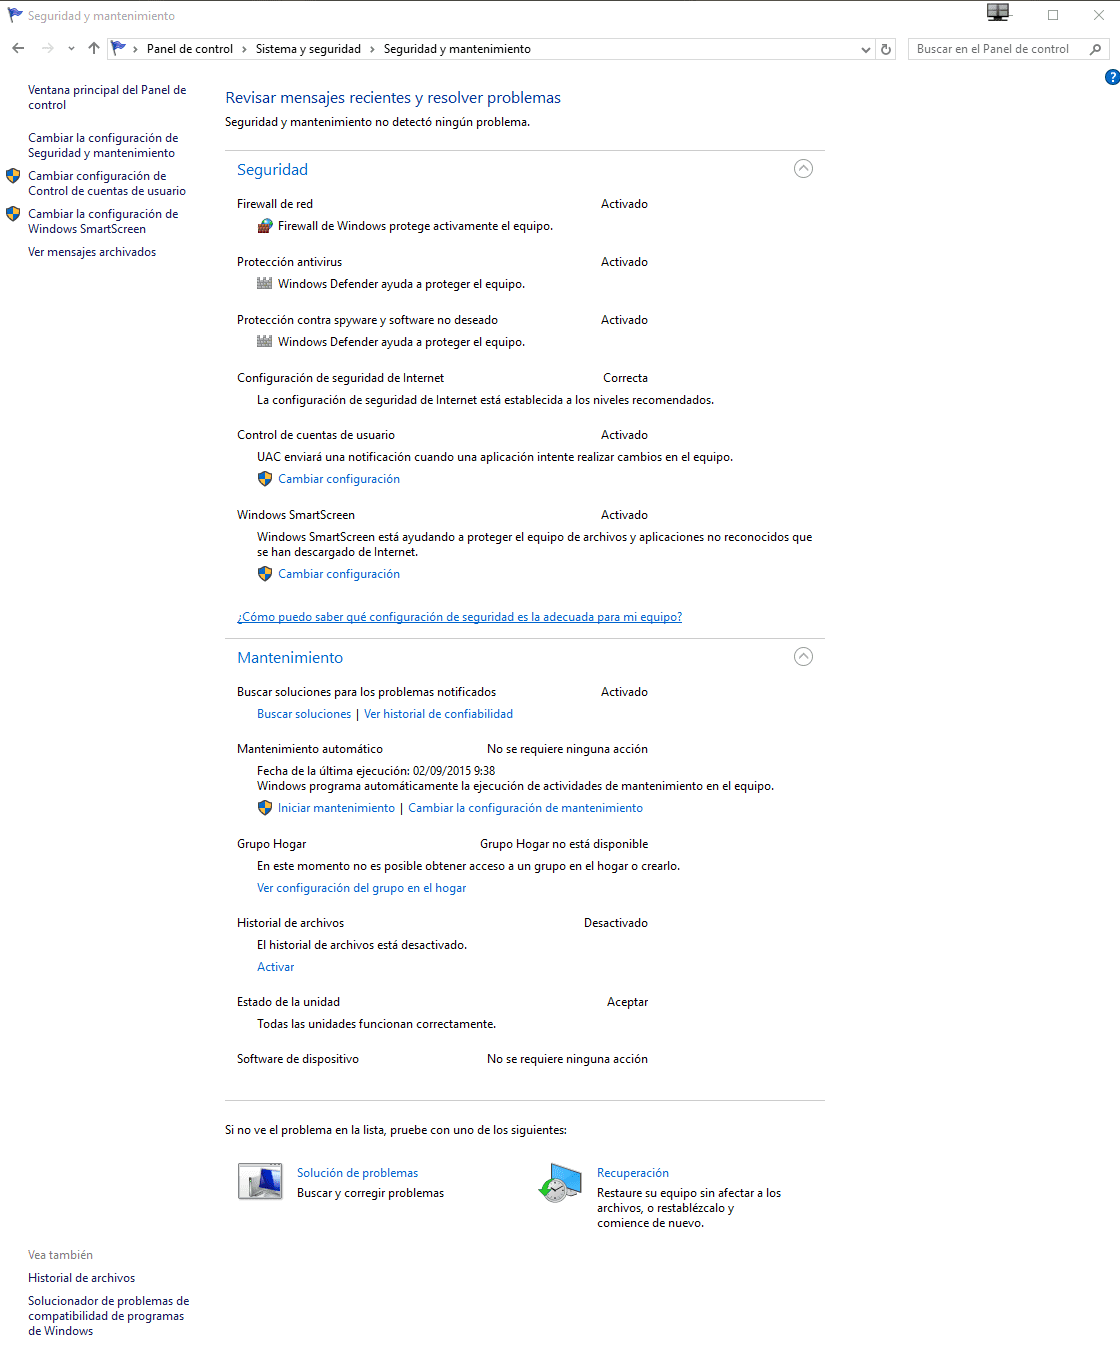 Comment vérifier l'état de l'ordinateur sous Windows 10